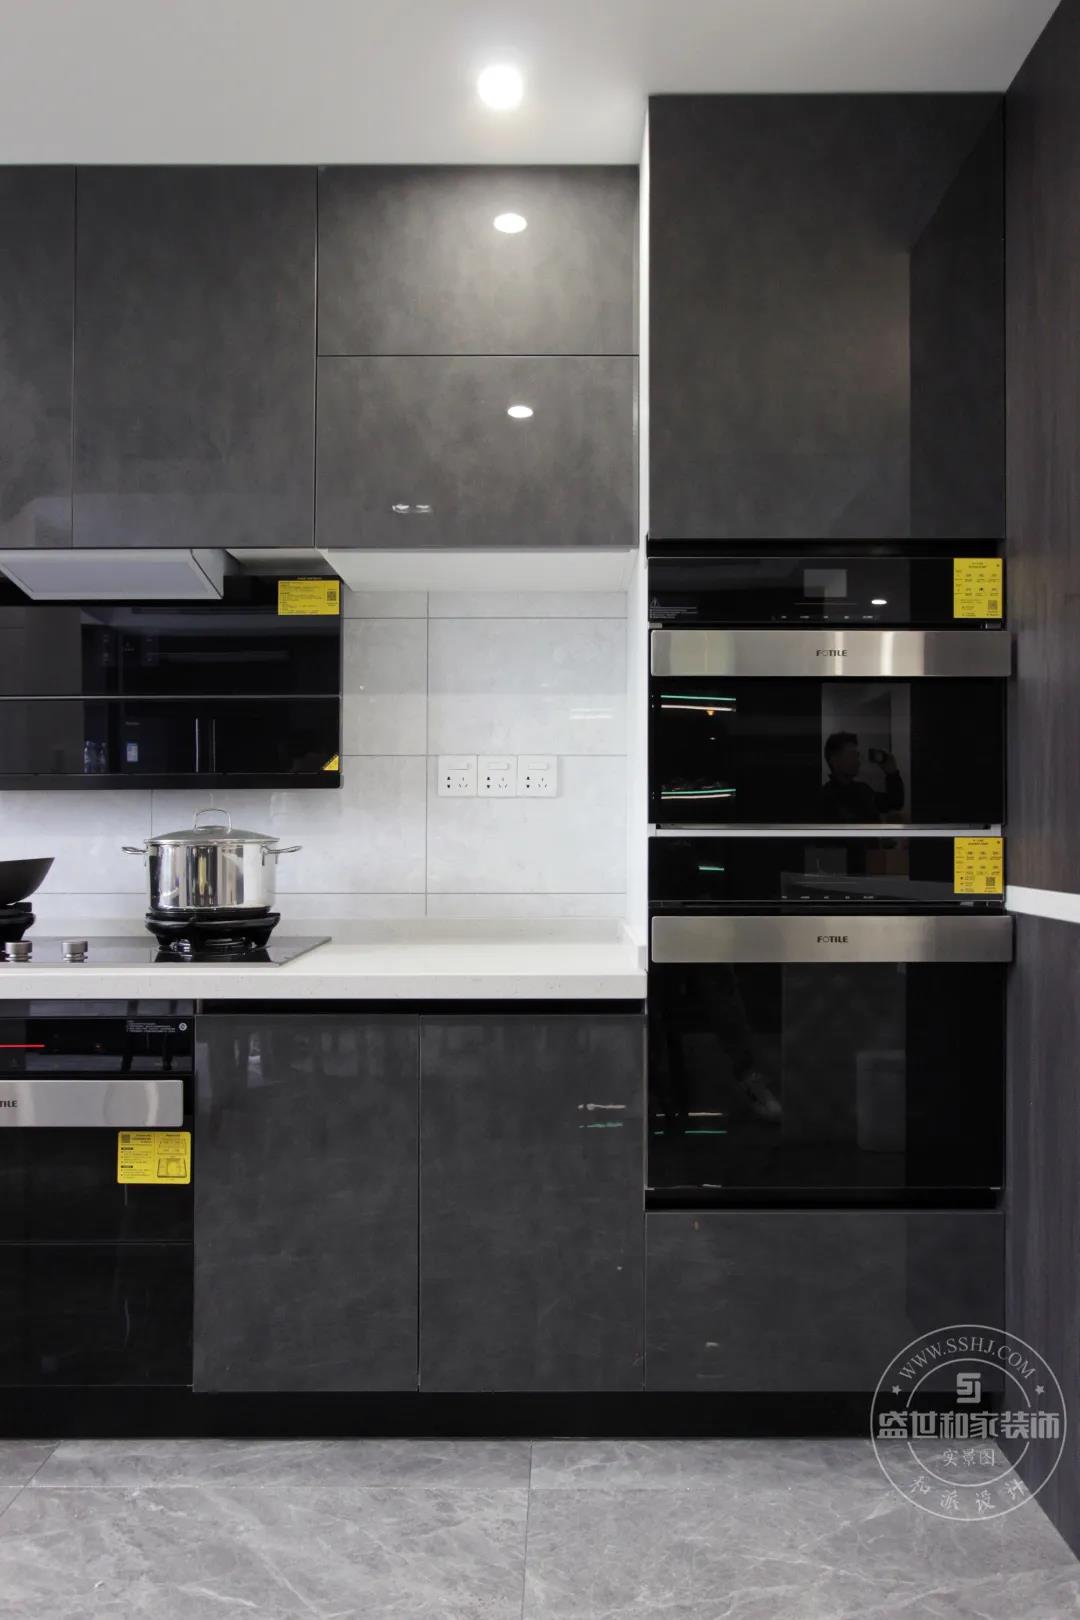 深灰色系橱柜有种典雅高贵的美感,无拉手的设计,更是使厨房空间变得